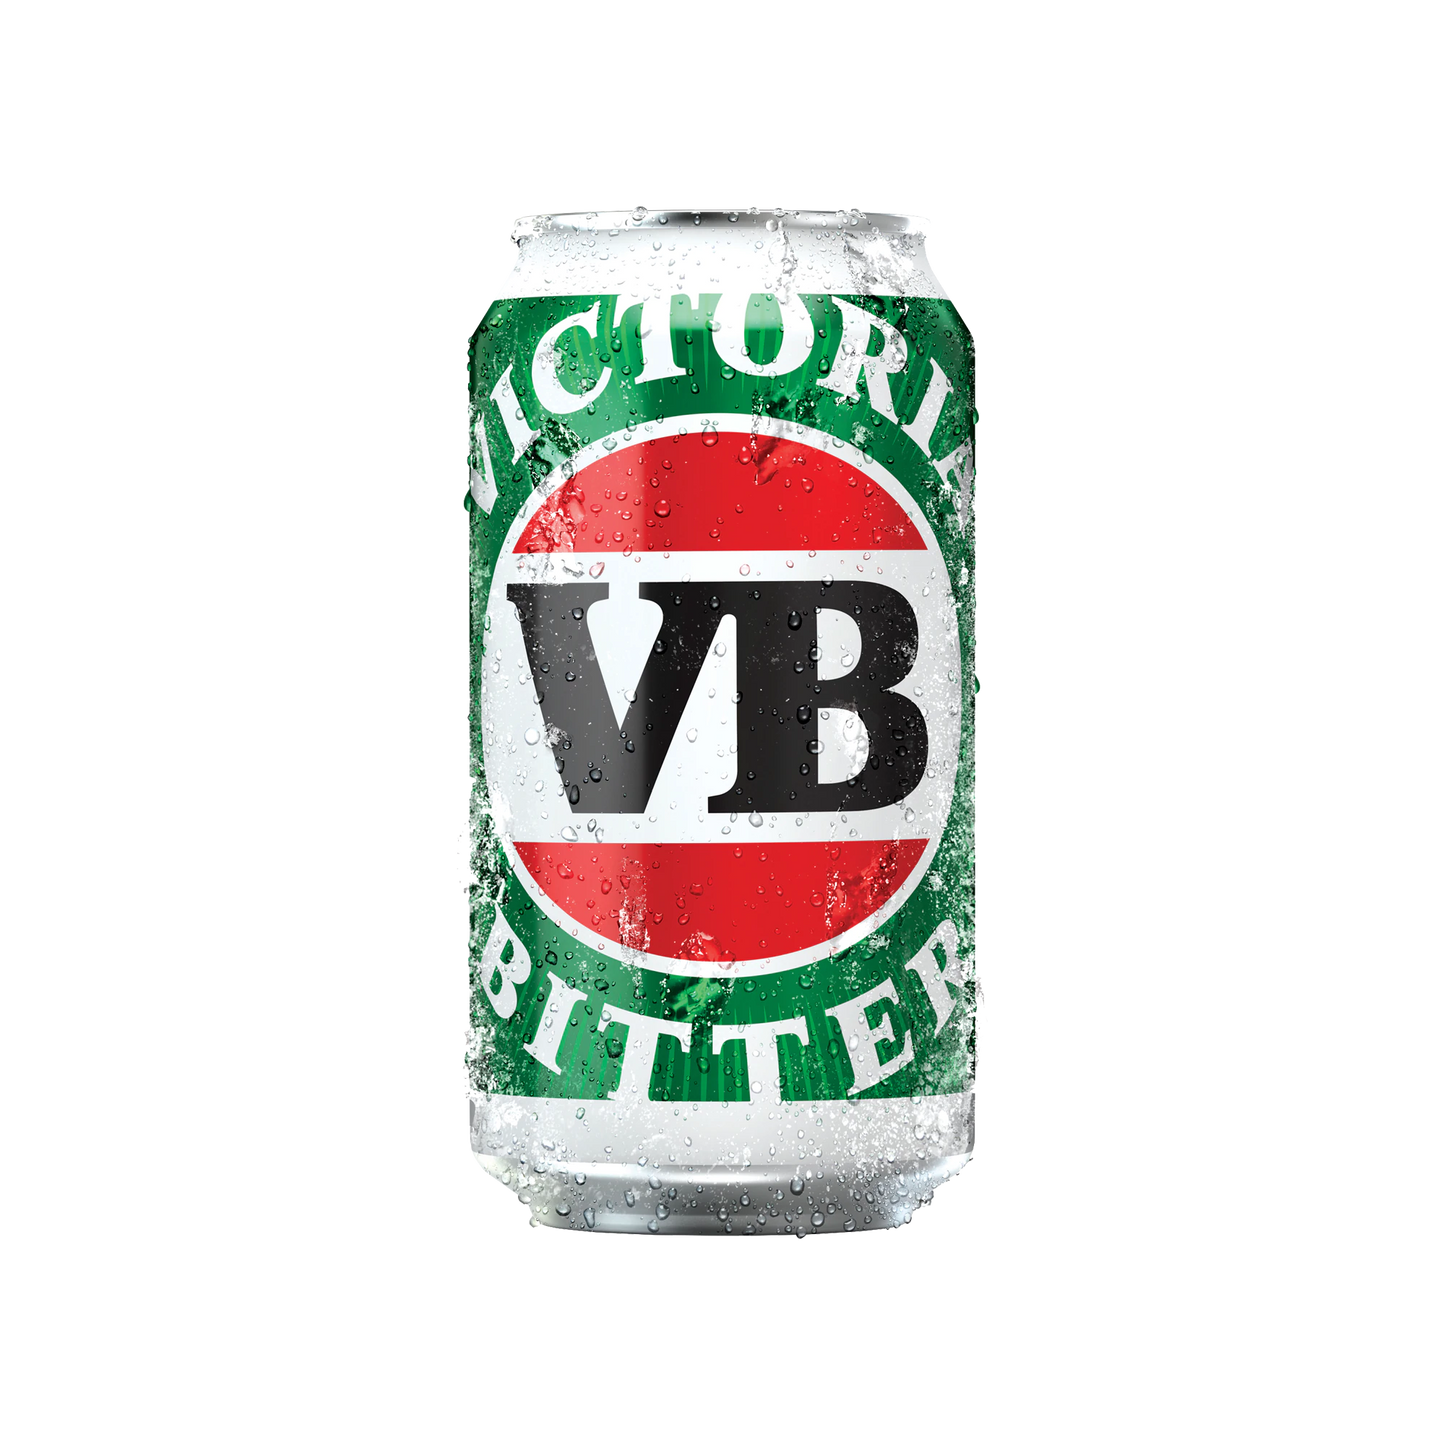 Victoria Bitter 375ml - Boozeit.com.au